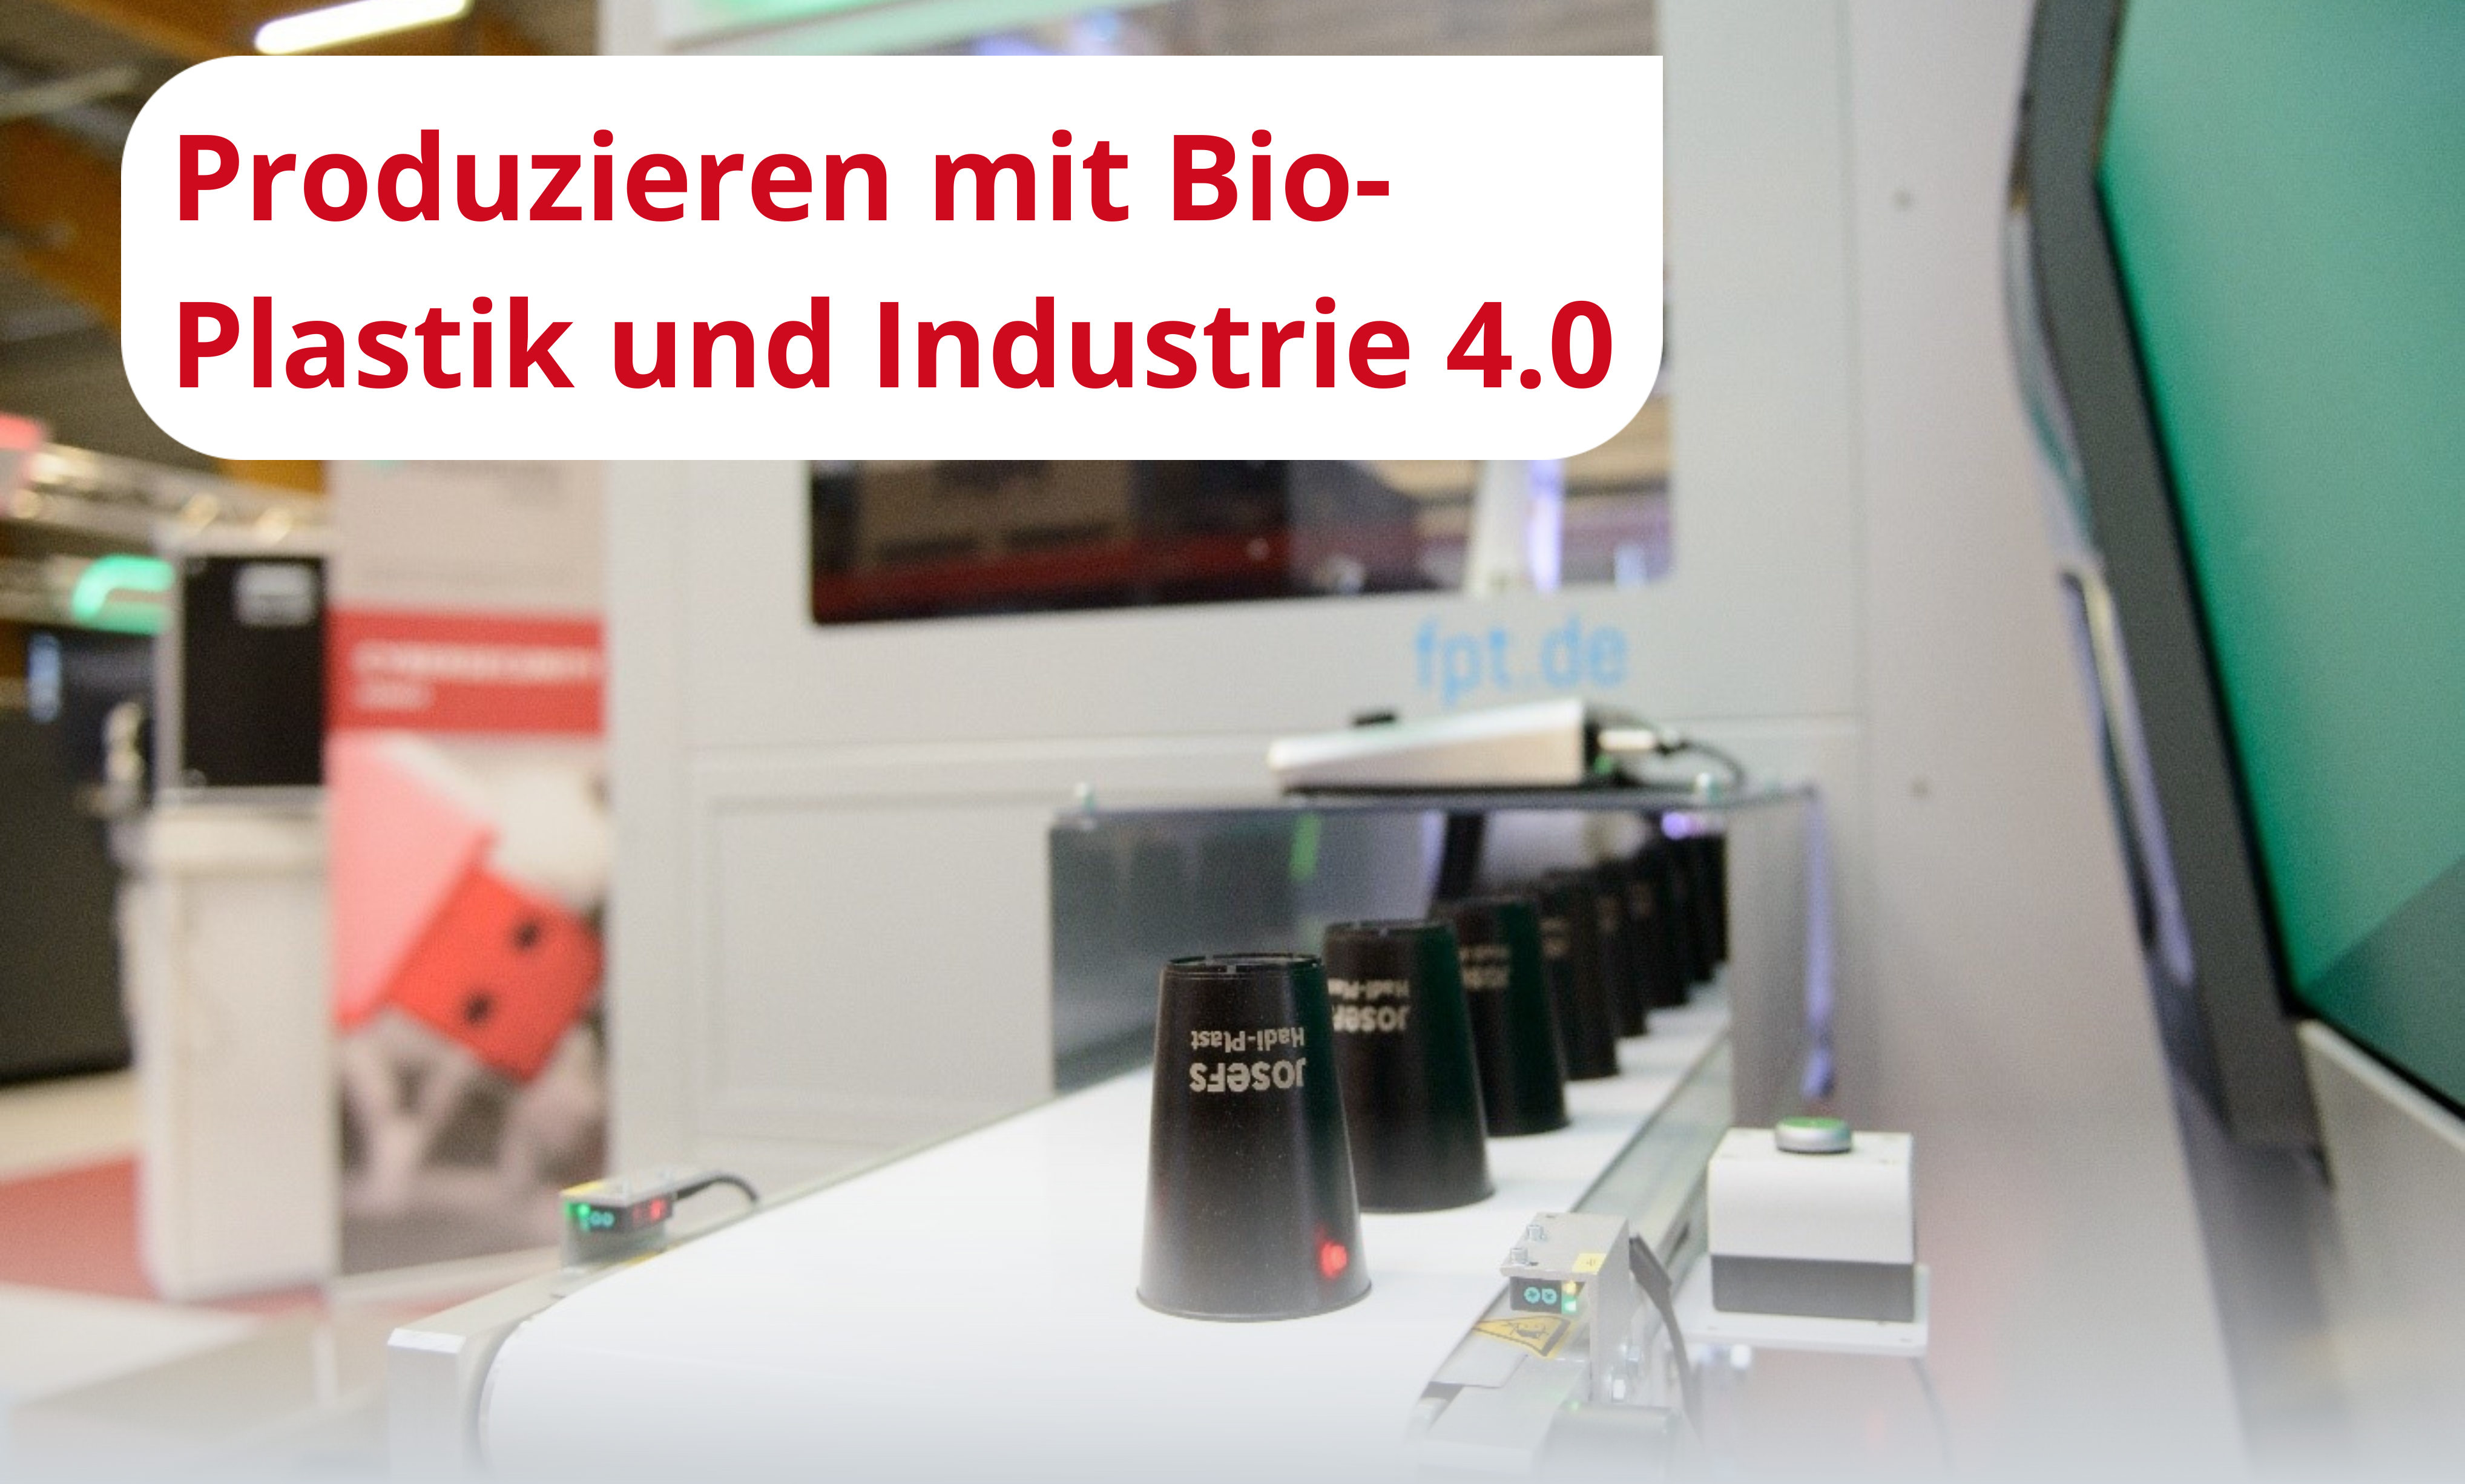 Produzieren mit Bio-Plastik und Industrie 4.0